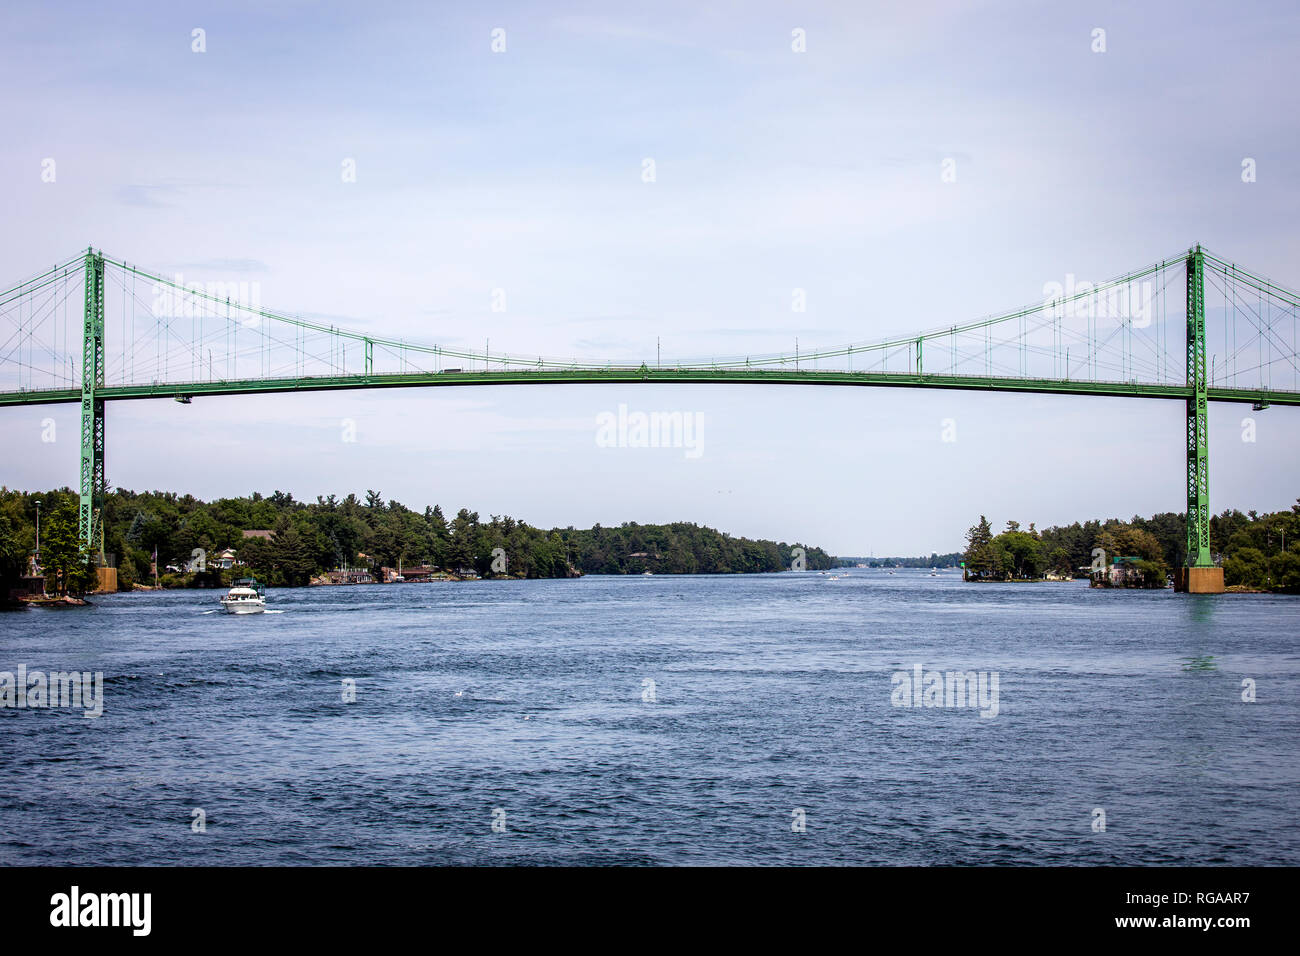 Région des Mille-Îles, l'Ontario, Canada, le 17 juin, 2018 : 1000 Islands International Bridge est un système de 5 ponts sur le fleuve Saint-Laurent Banque D'Images